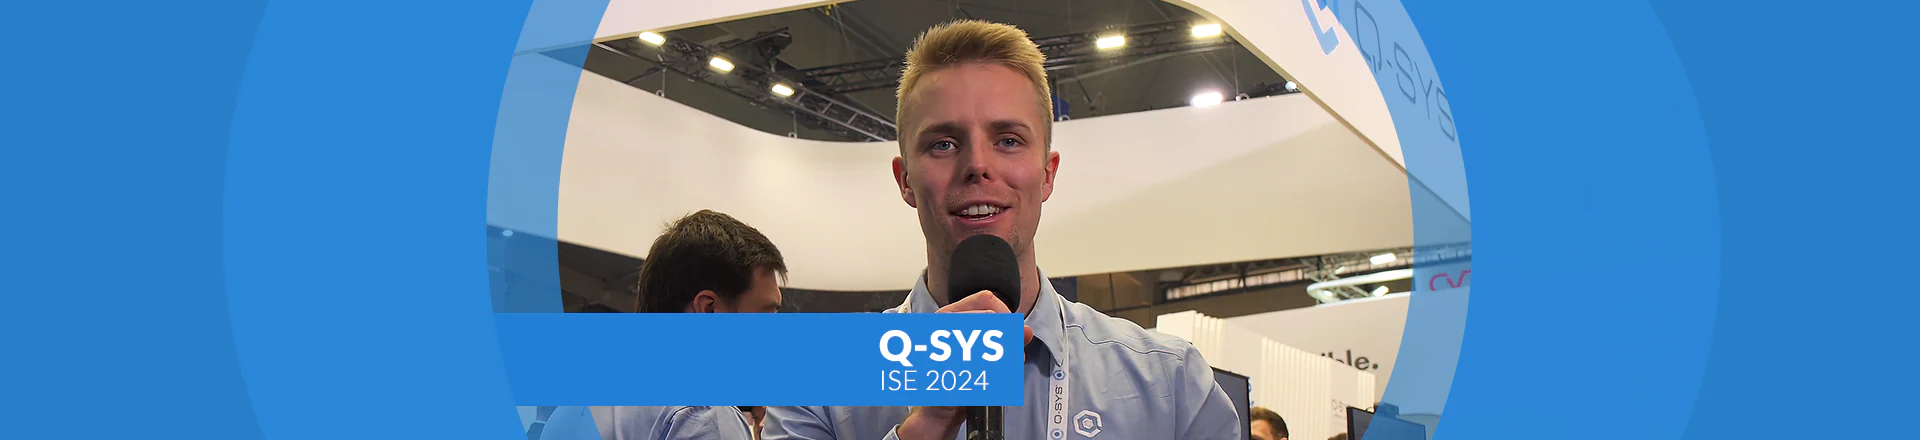 Q-SYS prezentuje na ISE 2024 przekrojowo swoją ofertę